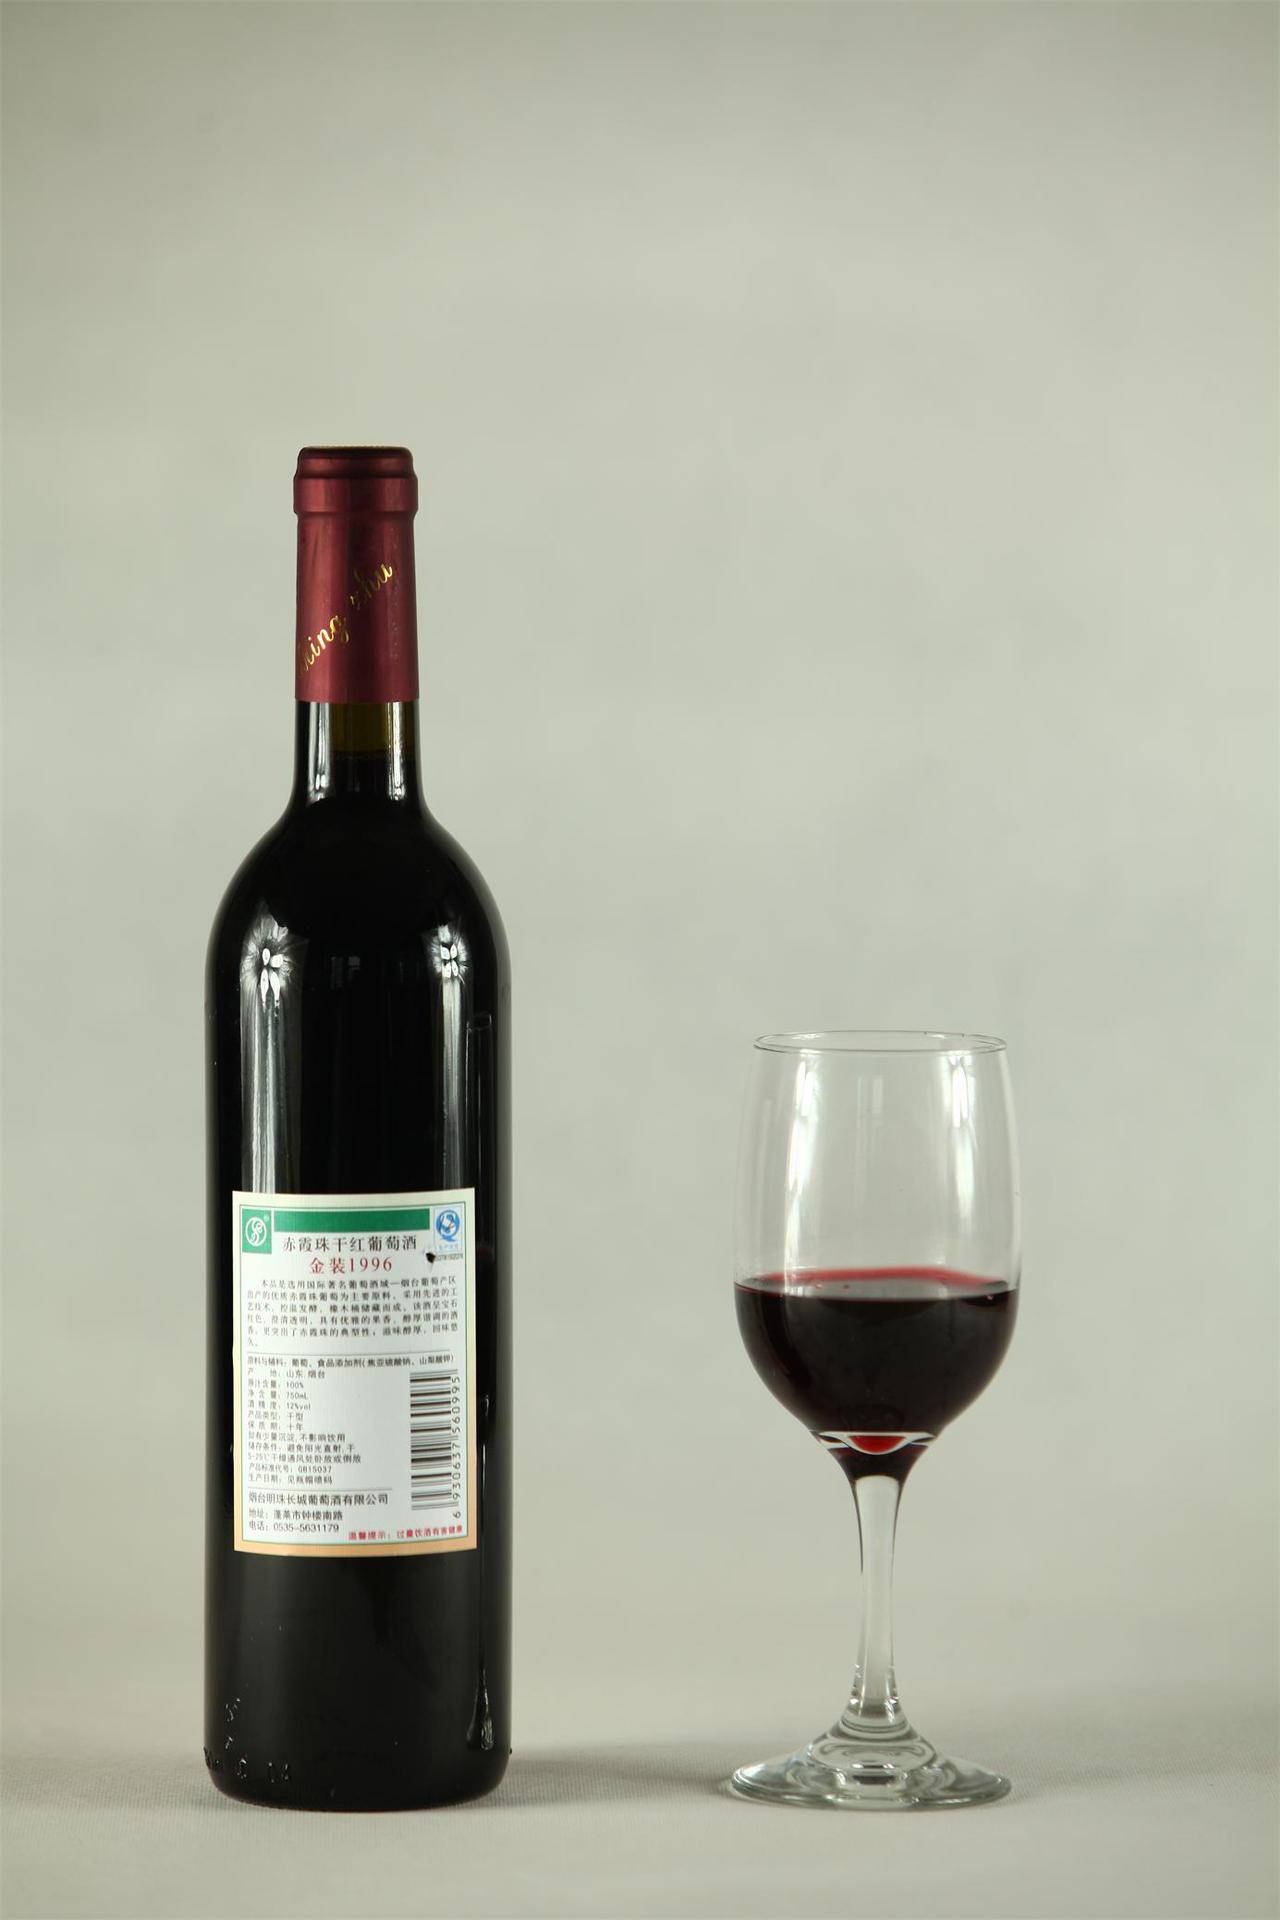 明珠长城金装1996赤霞珠干红葡萄酒图片,明珠